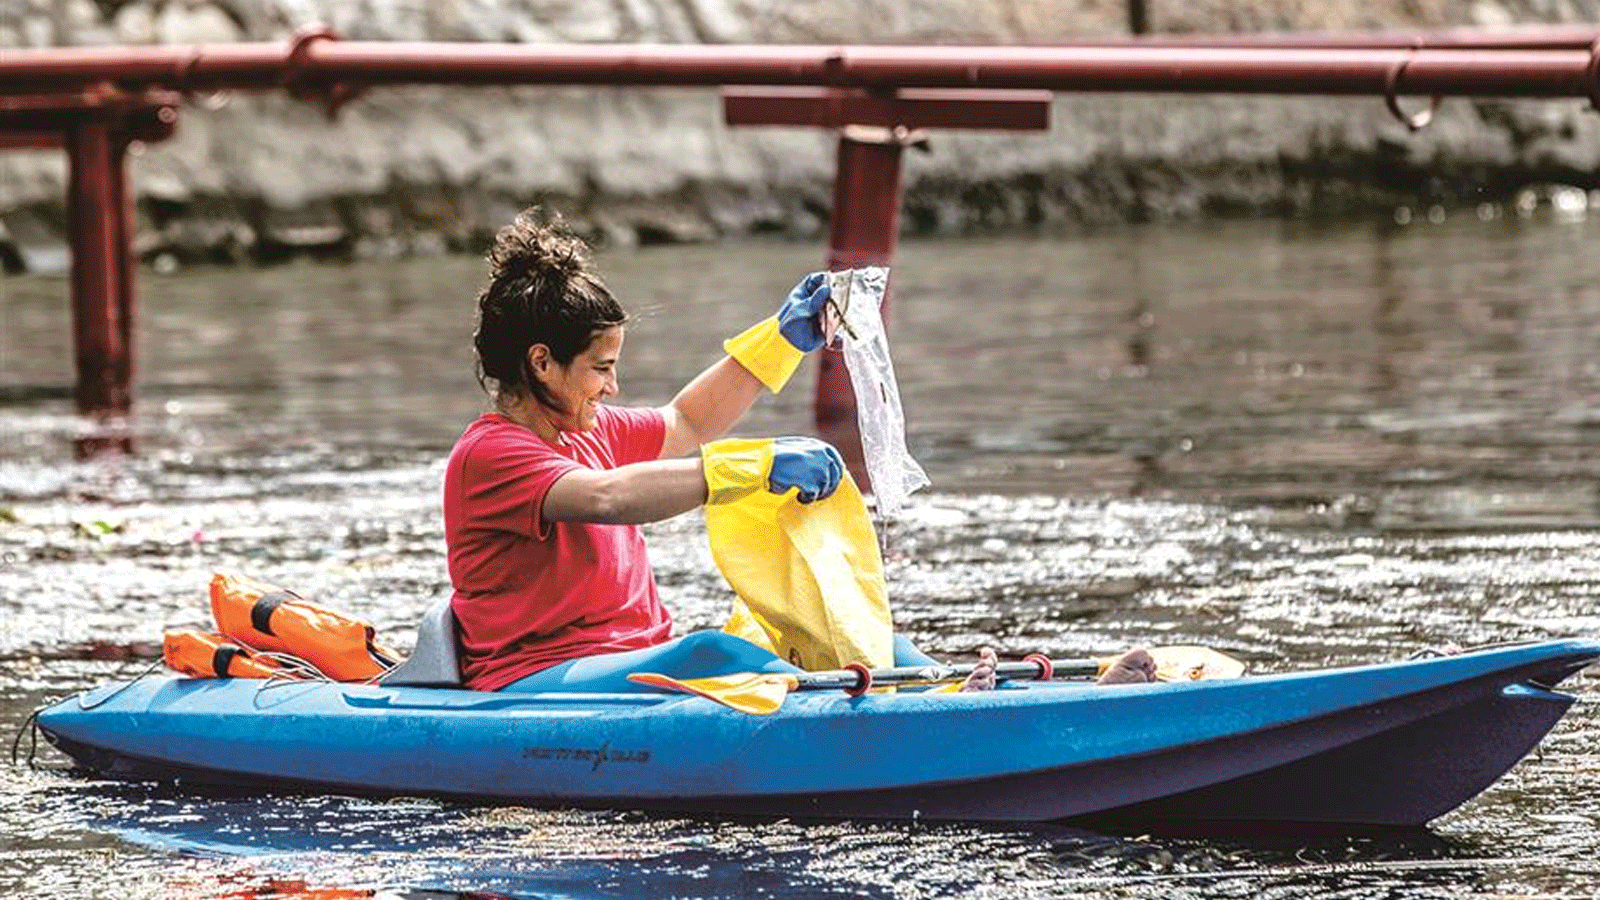 متطوعون يركبون قوارب الكاياك يشاركون في حملة لإزالة مخلفات المياه وتنظيفها في نهر النيل قبالة جزيرة المنيل في القاهرة في 7 مارس\آذار 2020